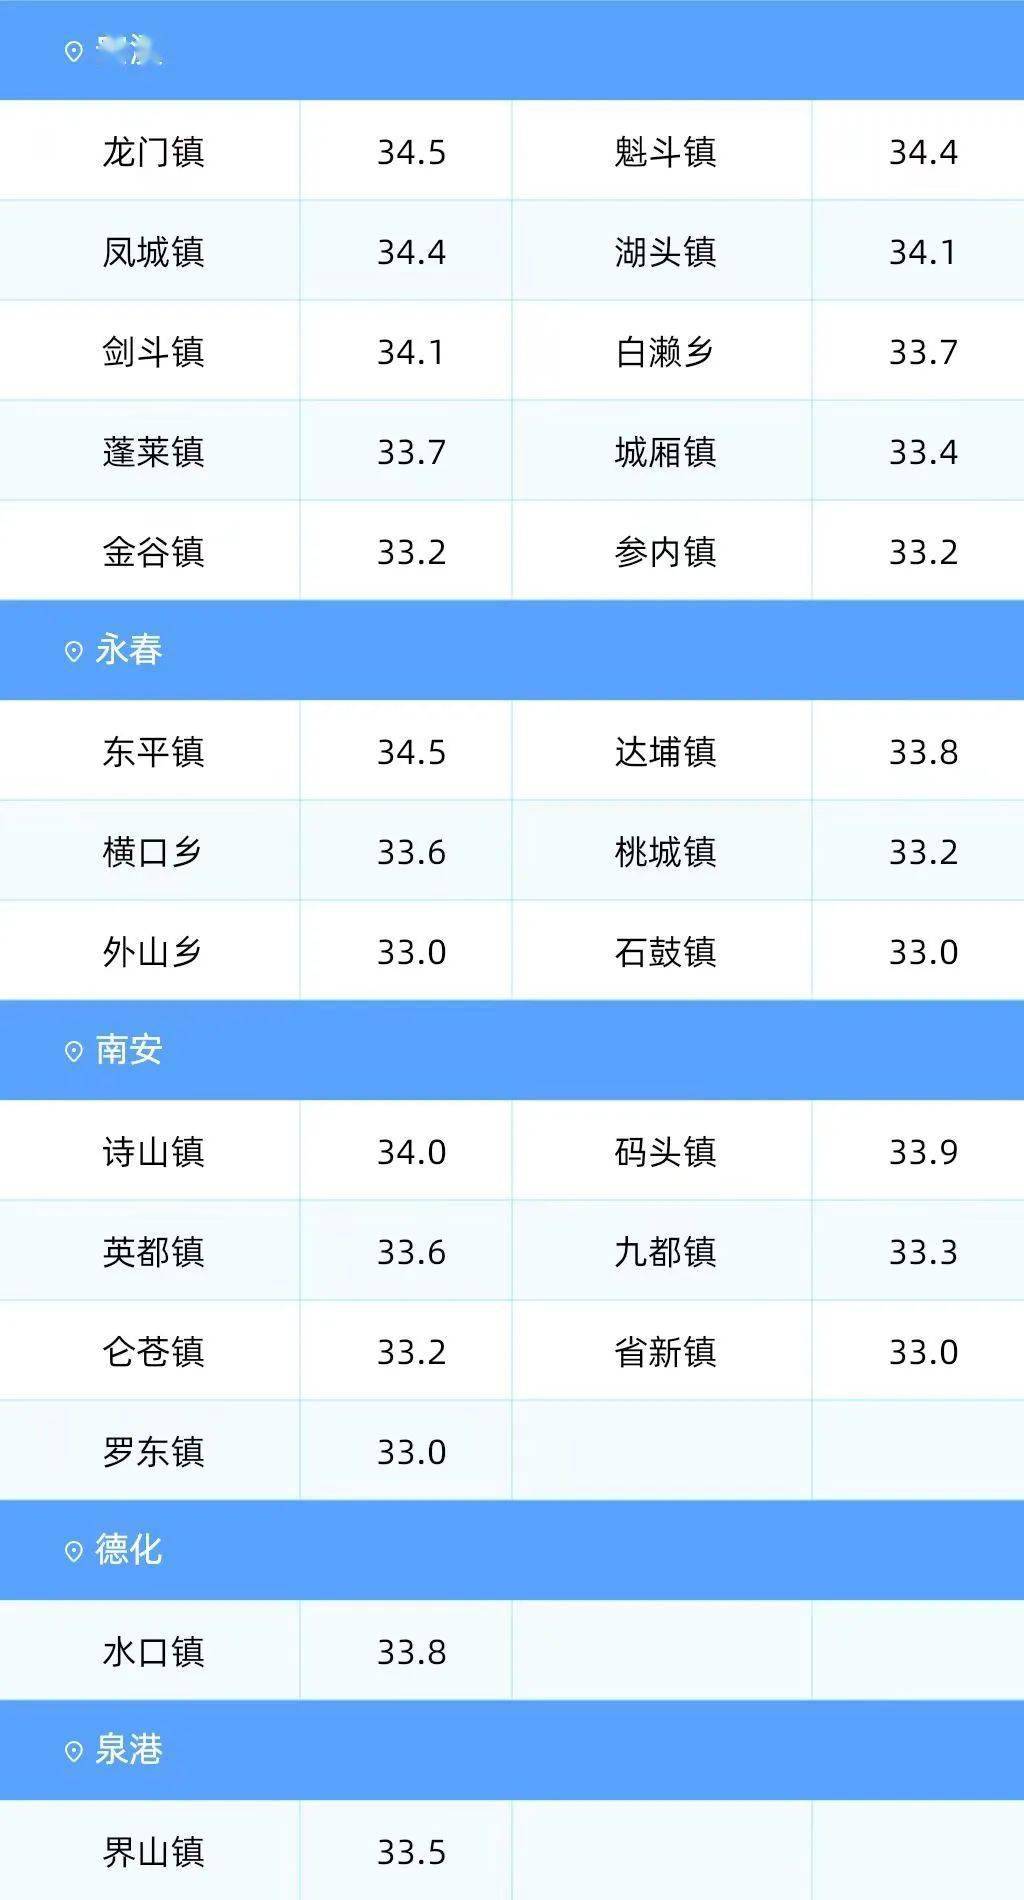 其中53个乡镇超过32℃,以永春县东平镇,安溪县龙门镇34